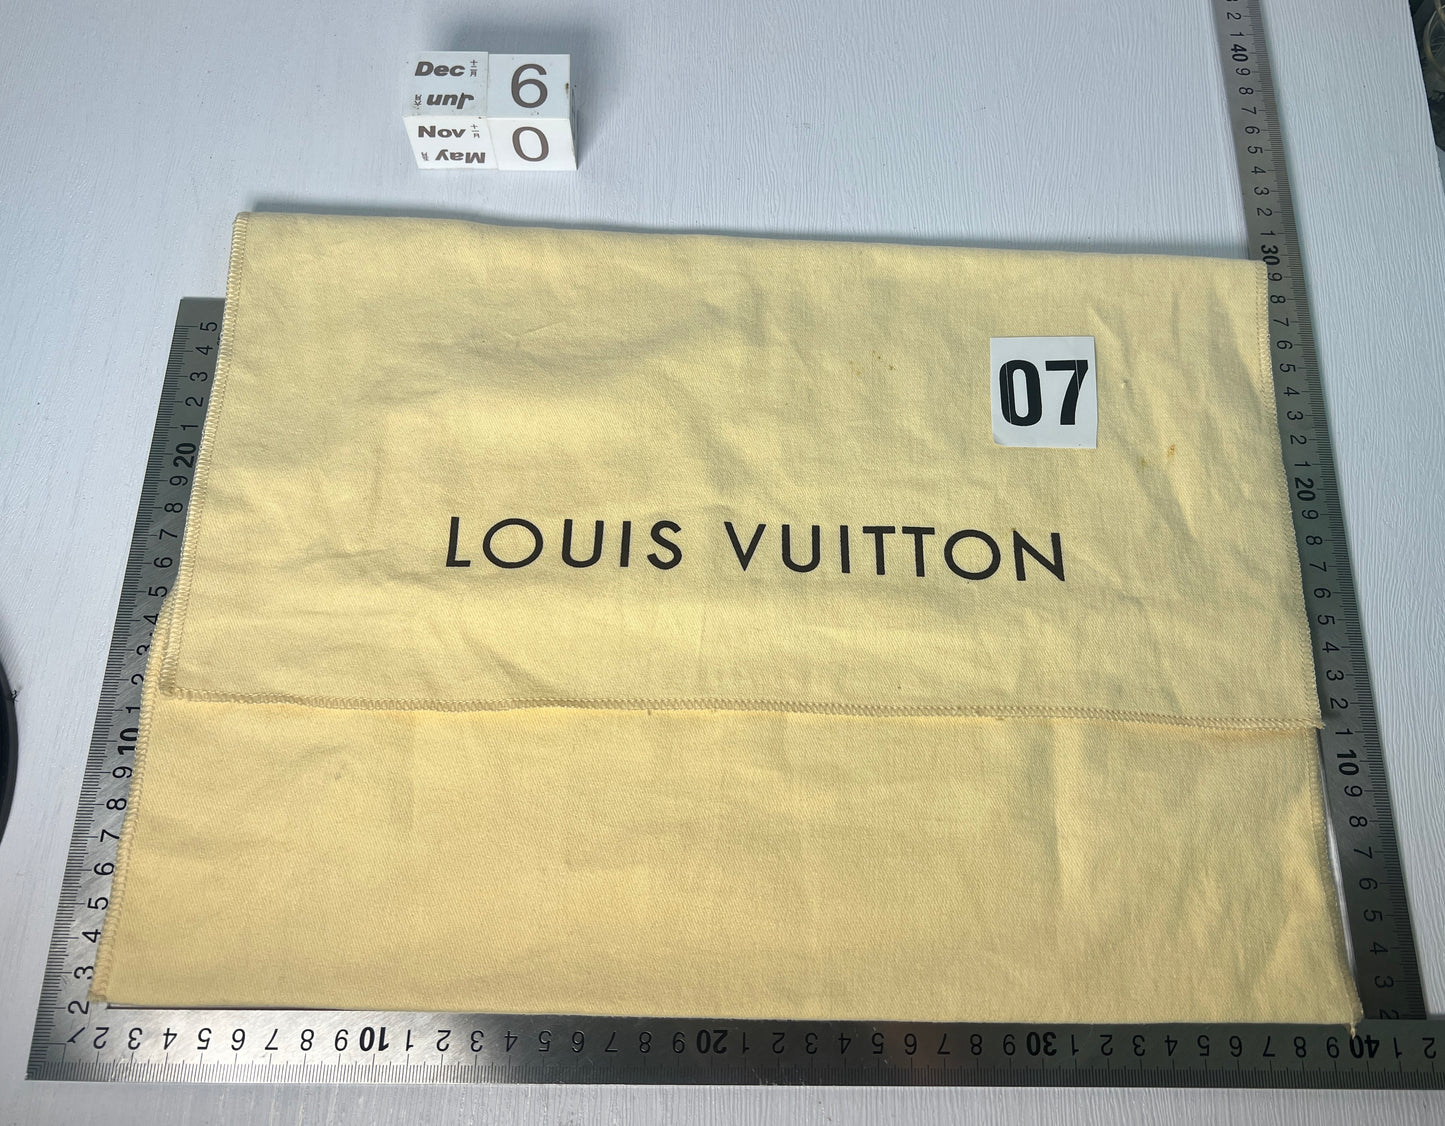 Louis Vuitton LV dust bag jewelly wallet bag - 3DEC